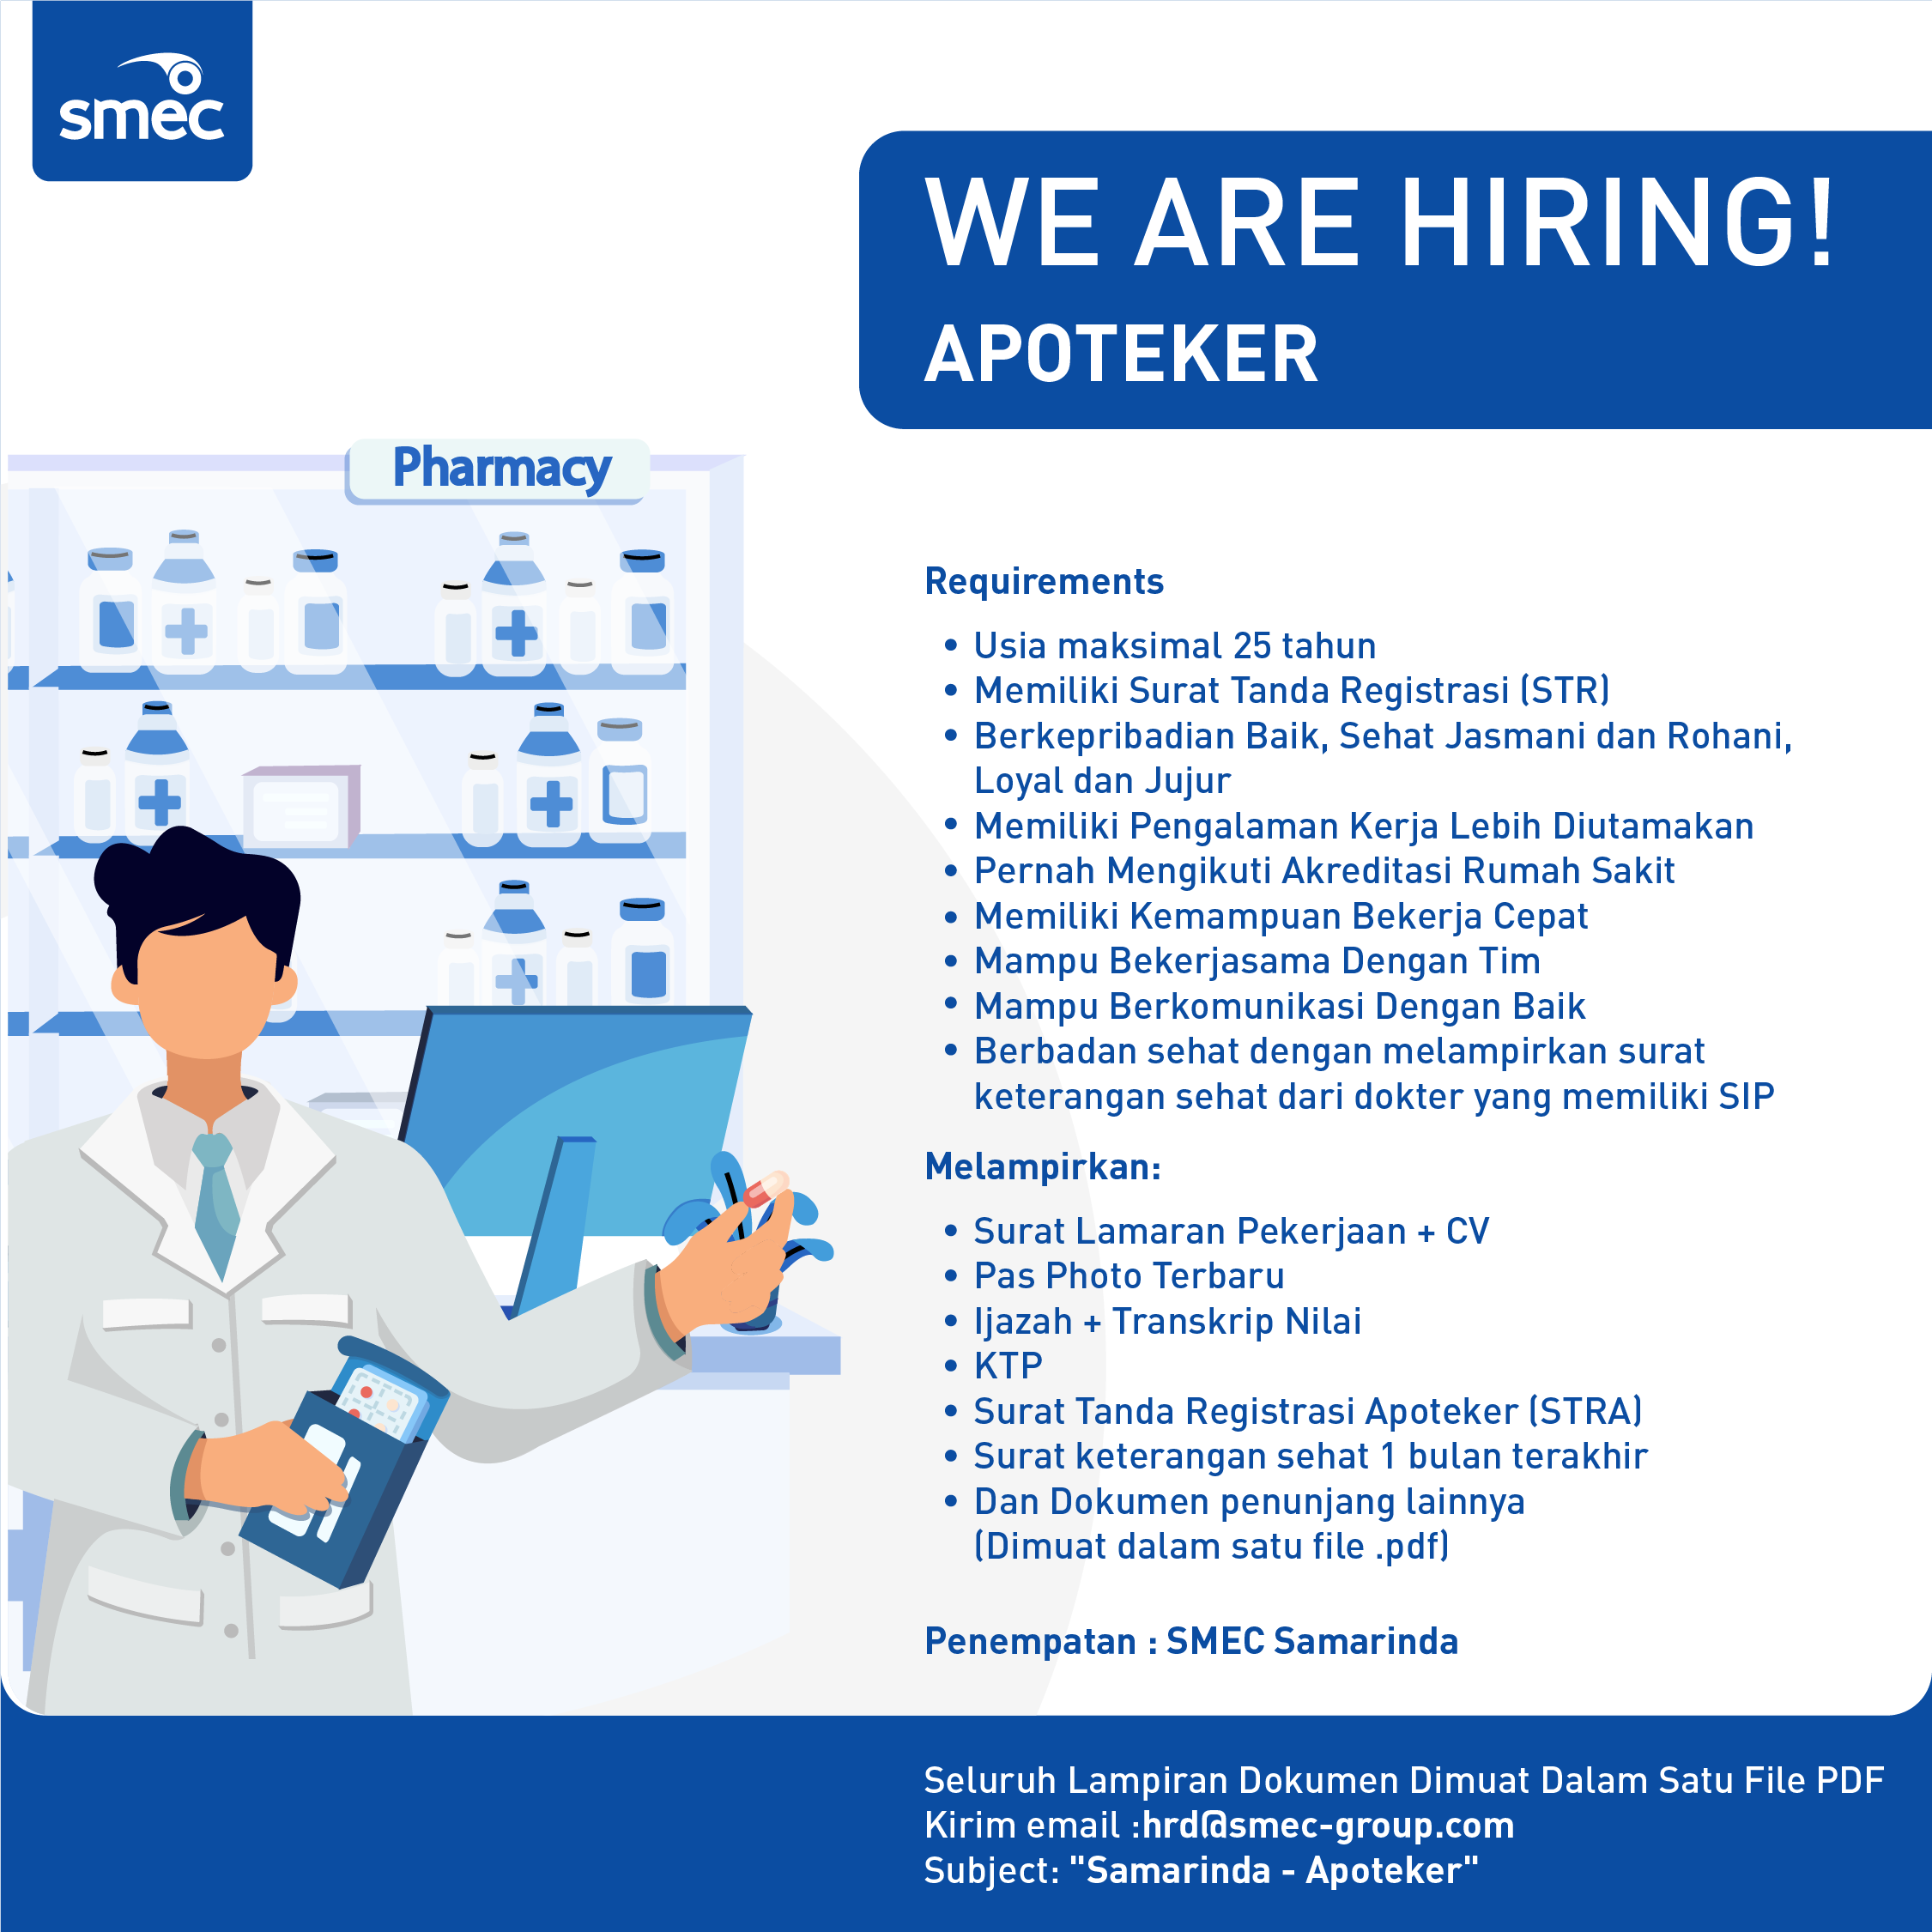 SMEC job hiring - apoteker-1101.png